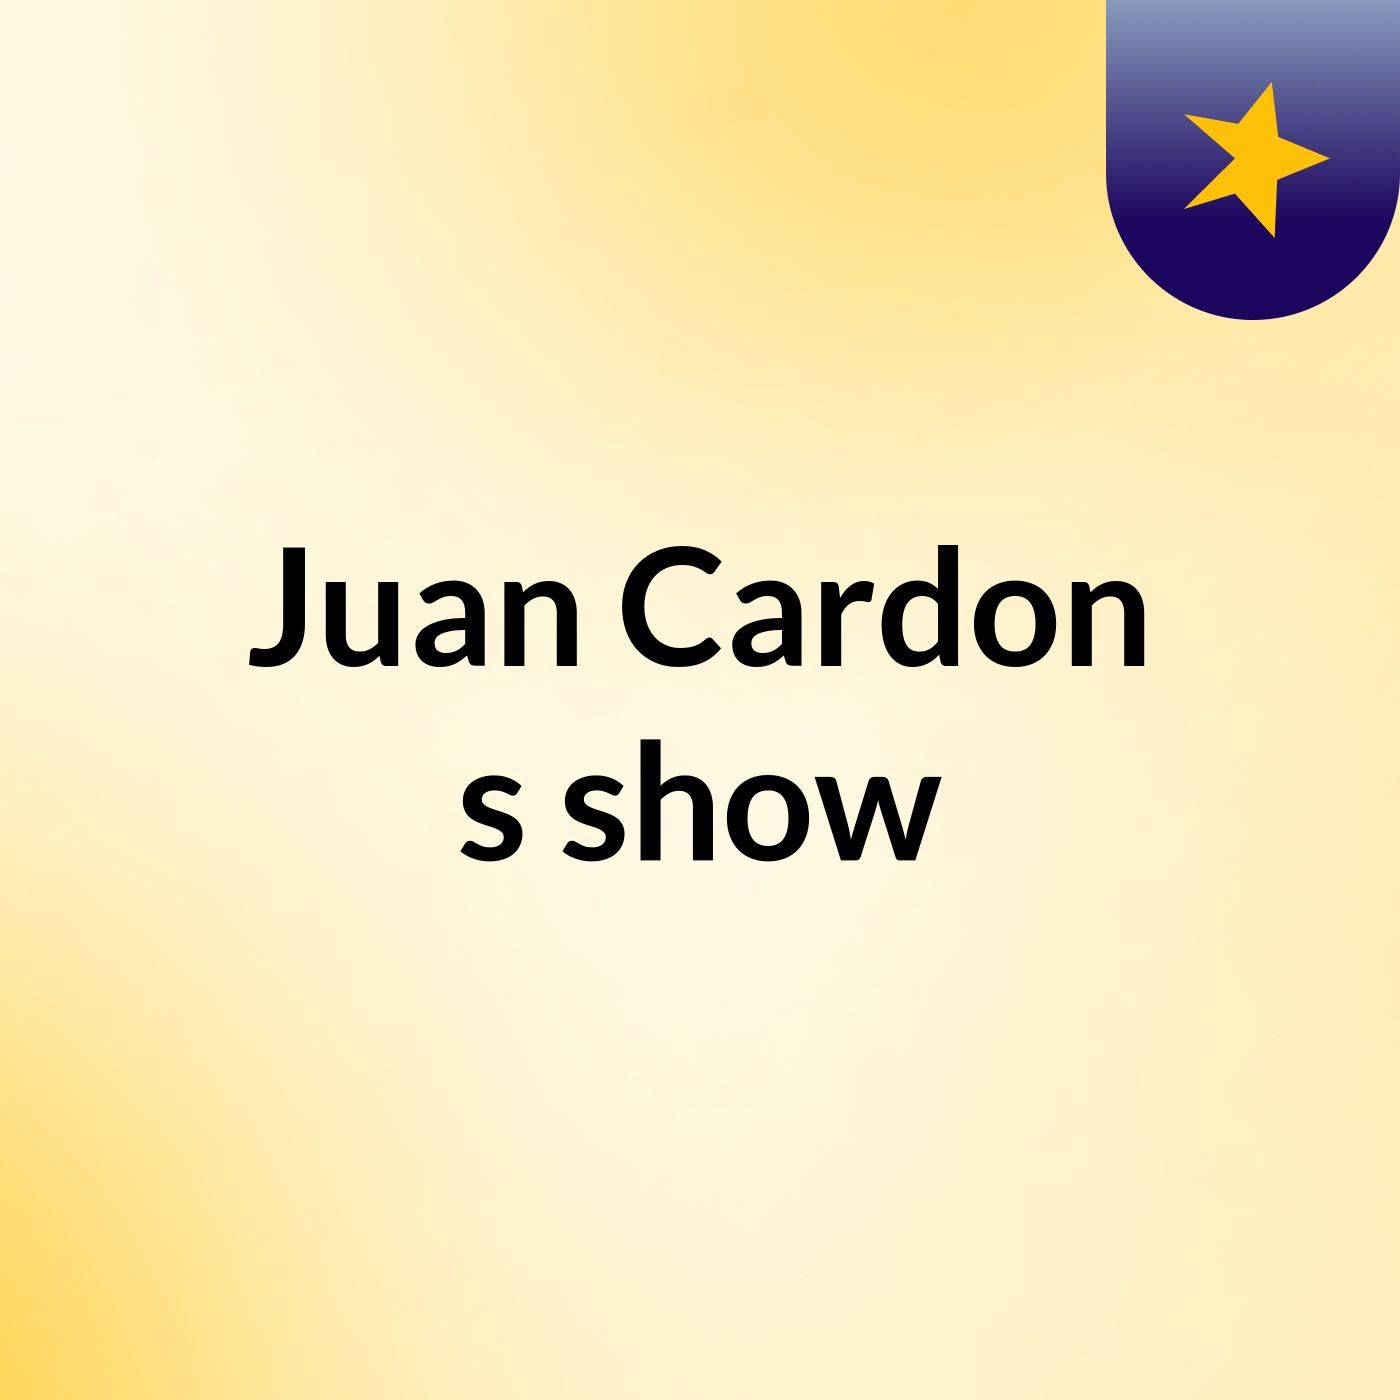 Juan Cardon's show